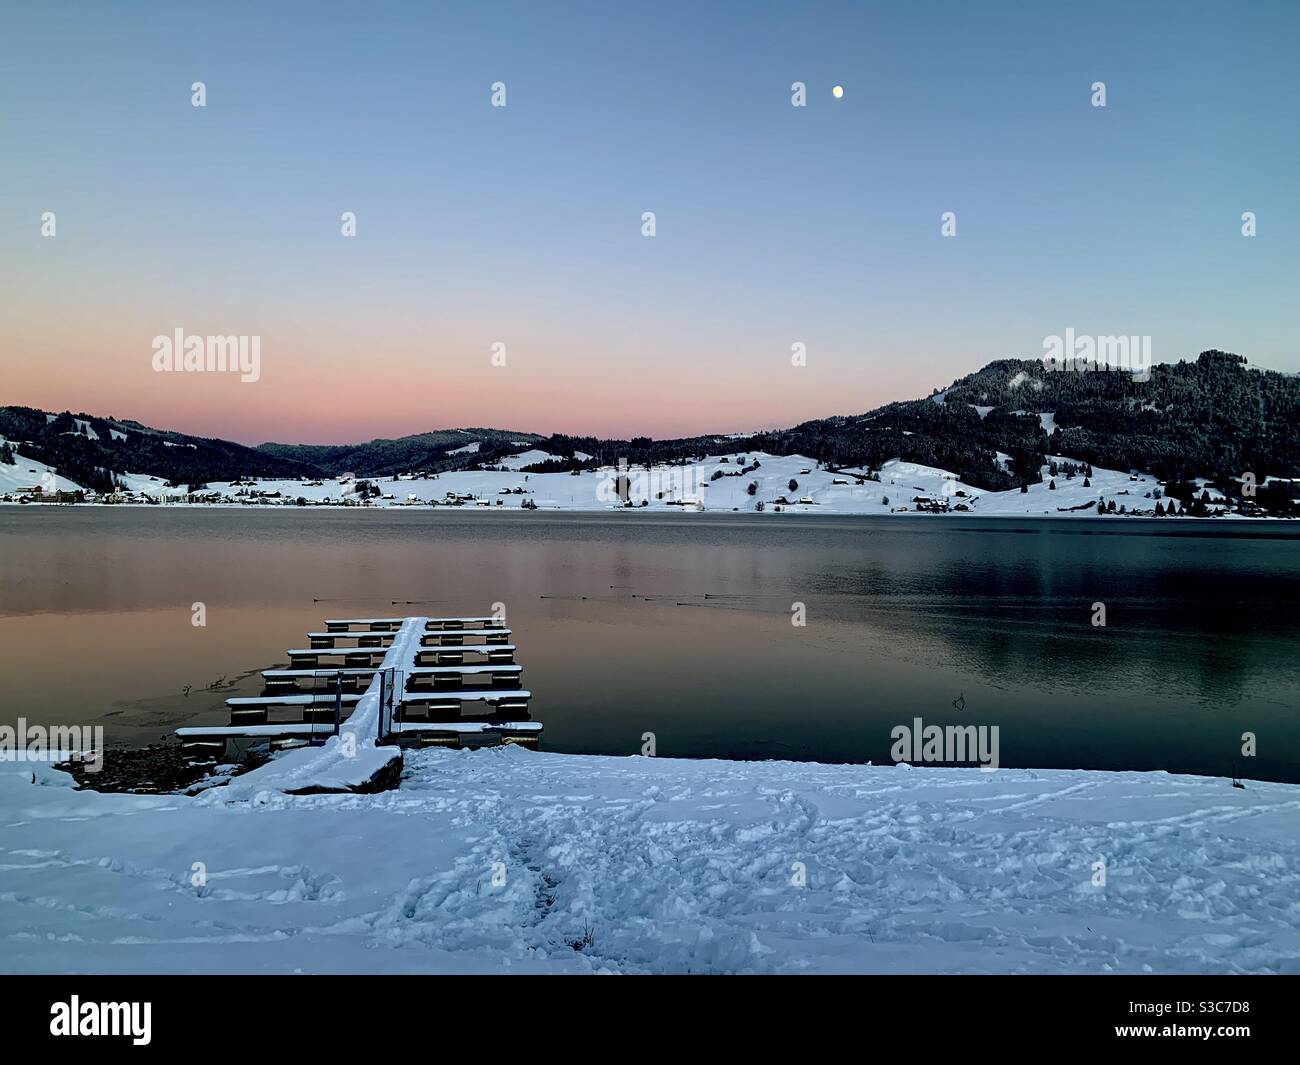 Coucher de soleil sur le lac Sihl, ou Sihlsee en allemand, dans le village Gross, en Suisse, le jour d'hiver. Les montagnes réfléchissent sur la surface de l'eau leur forme abd couleurs. La lune est déjà dans le ciel. Banque D'Images